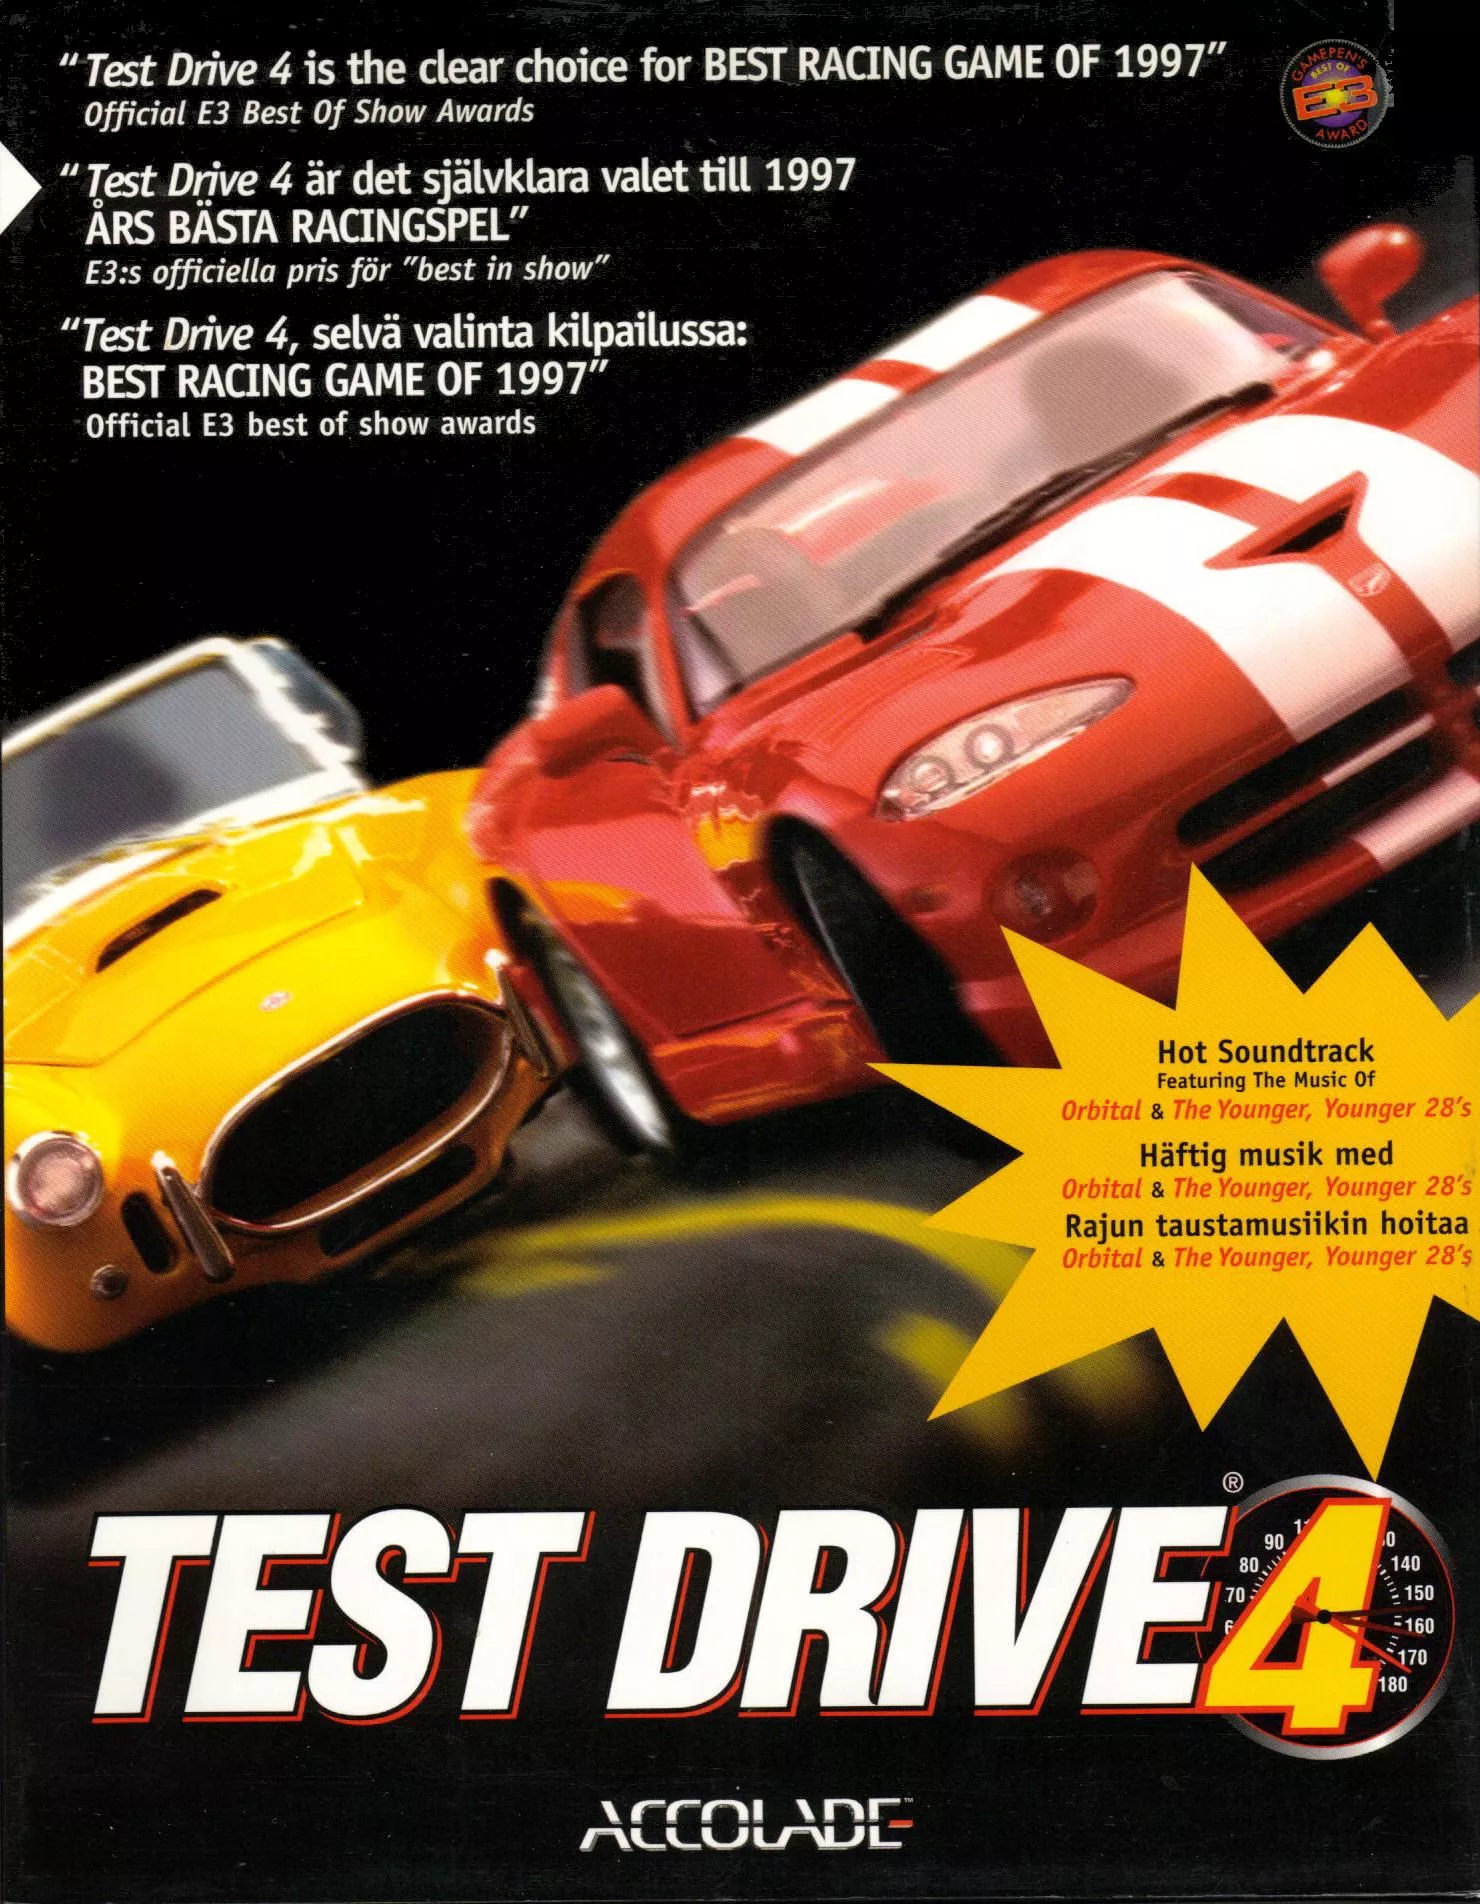  5. Test Drive 4 (1997).